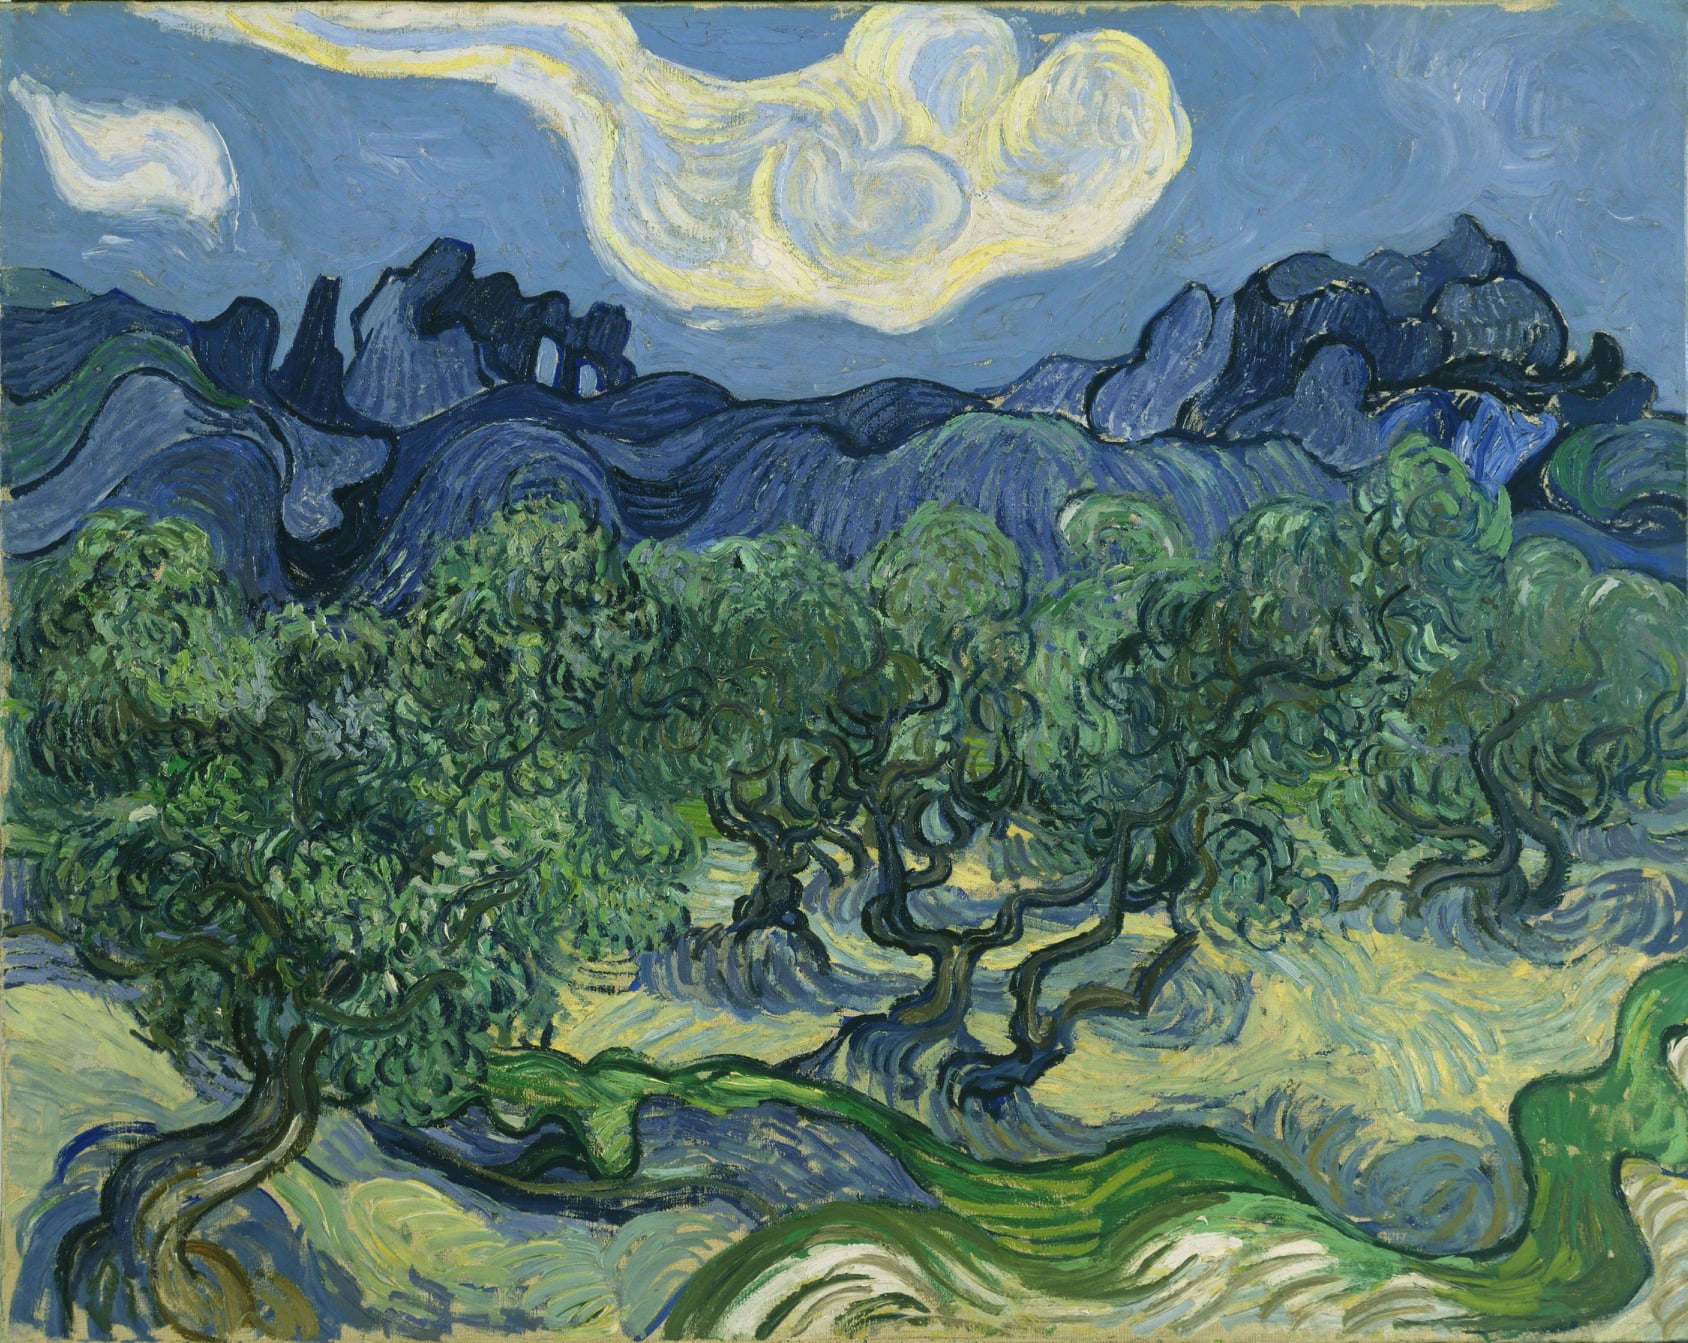 Lưỡng cực sắc thái của Vincent Van Gogh: vàng và xanh - 3